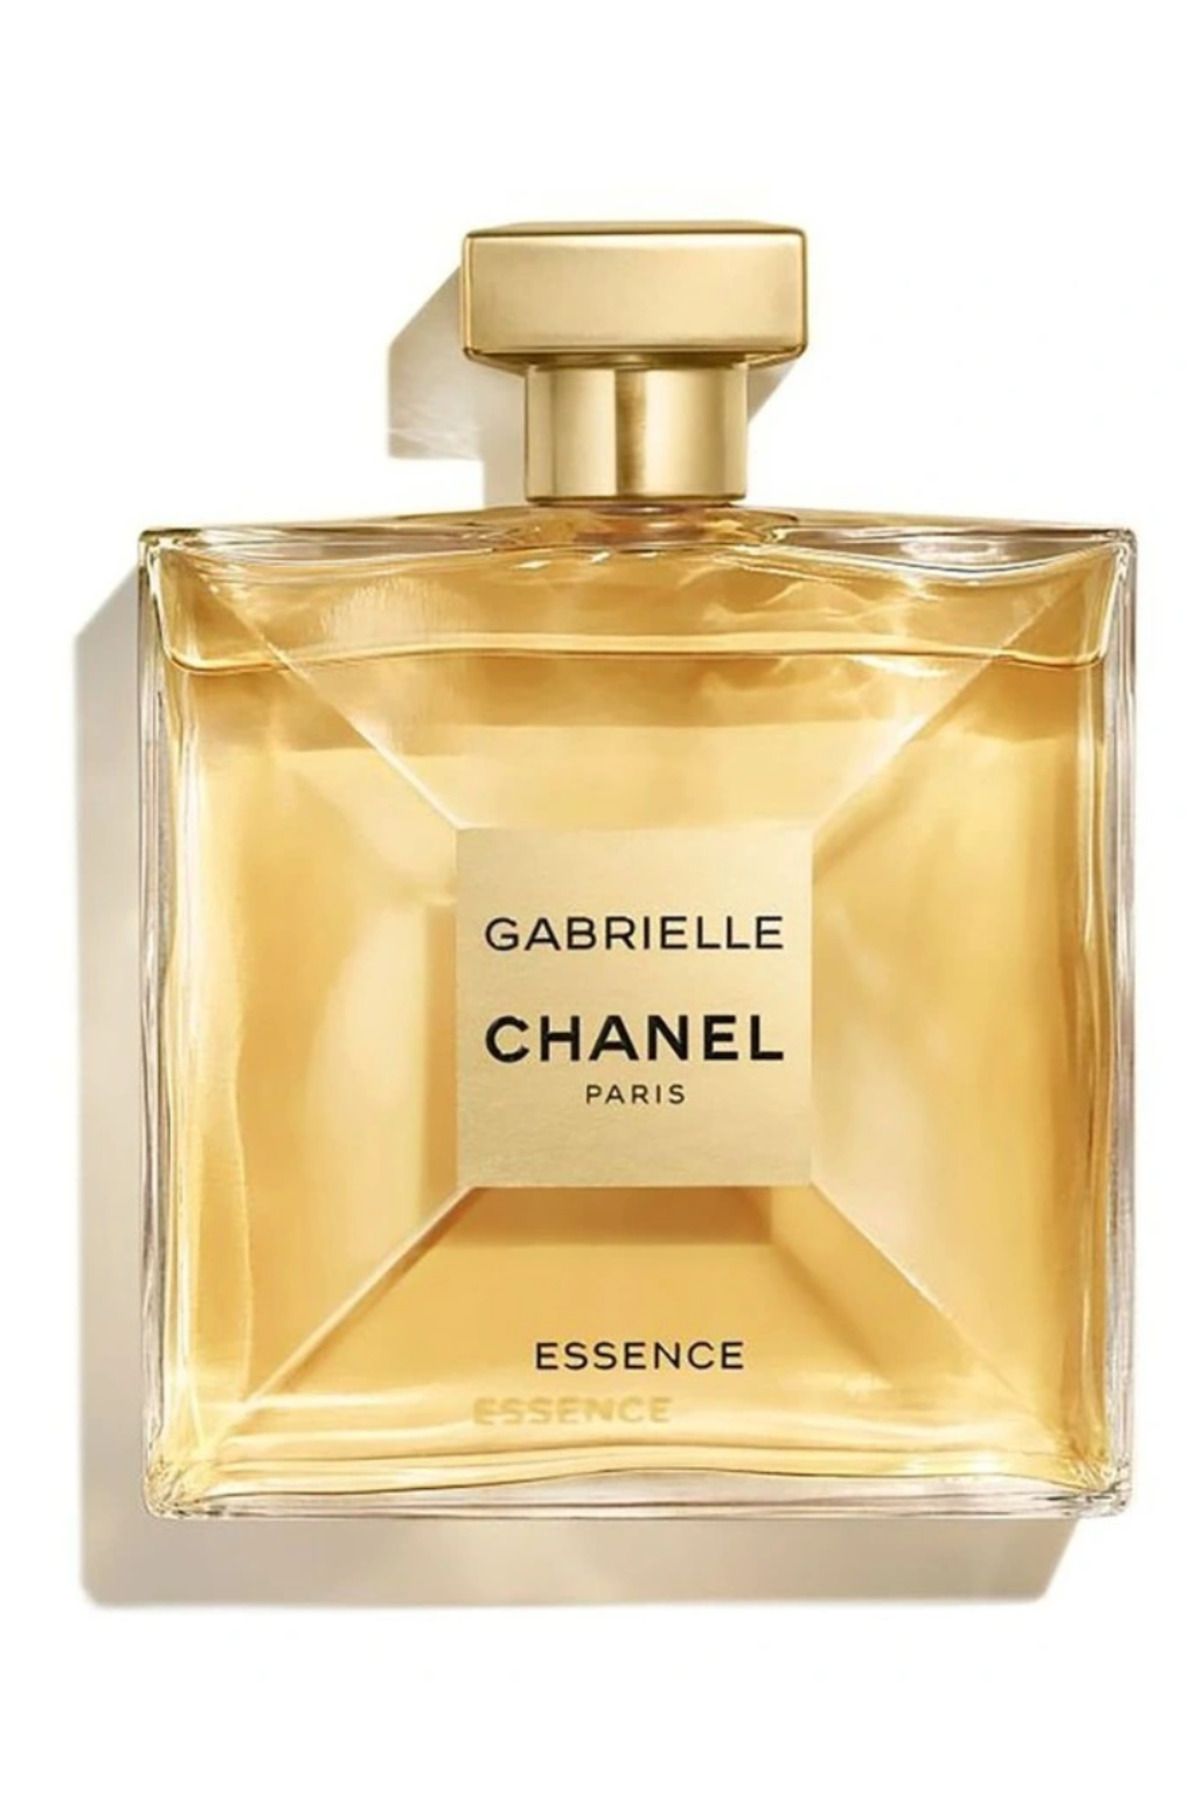 Chanel Erkek Parfüm Fiyatları ve Çeşitleri - Trendyol